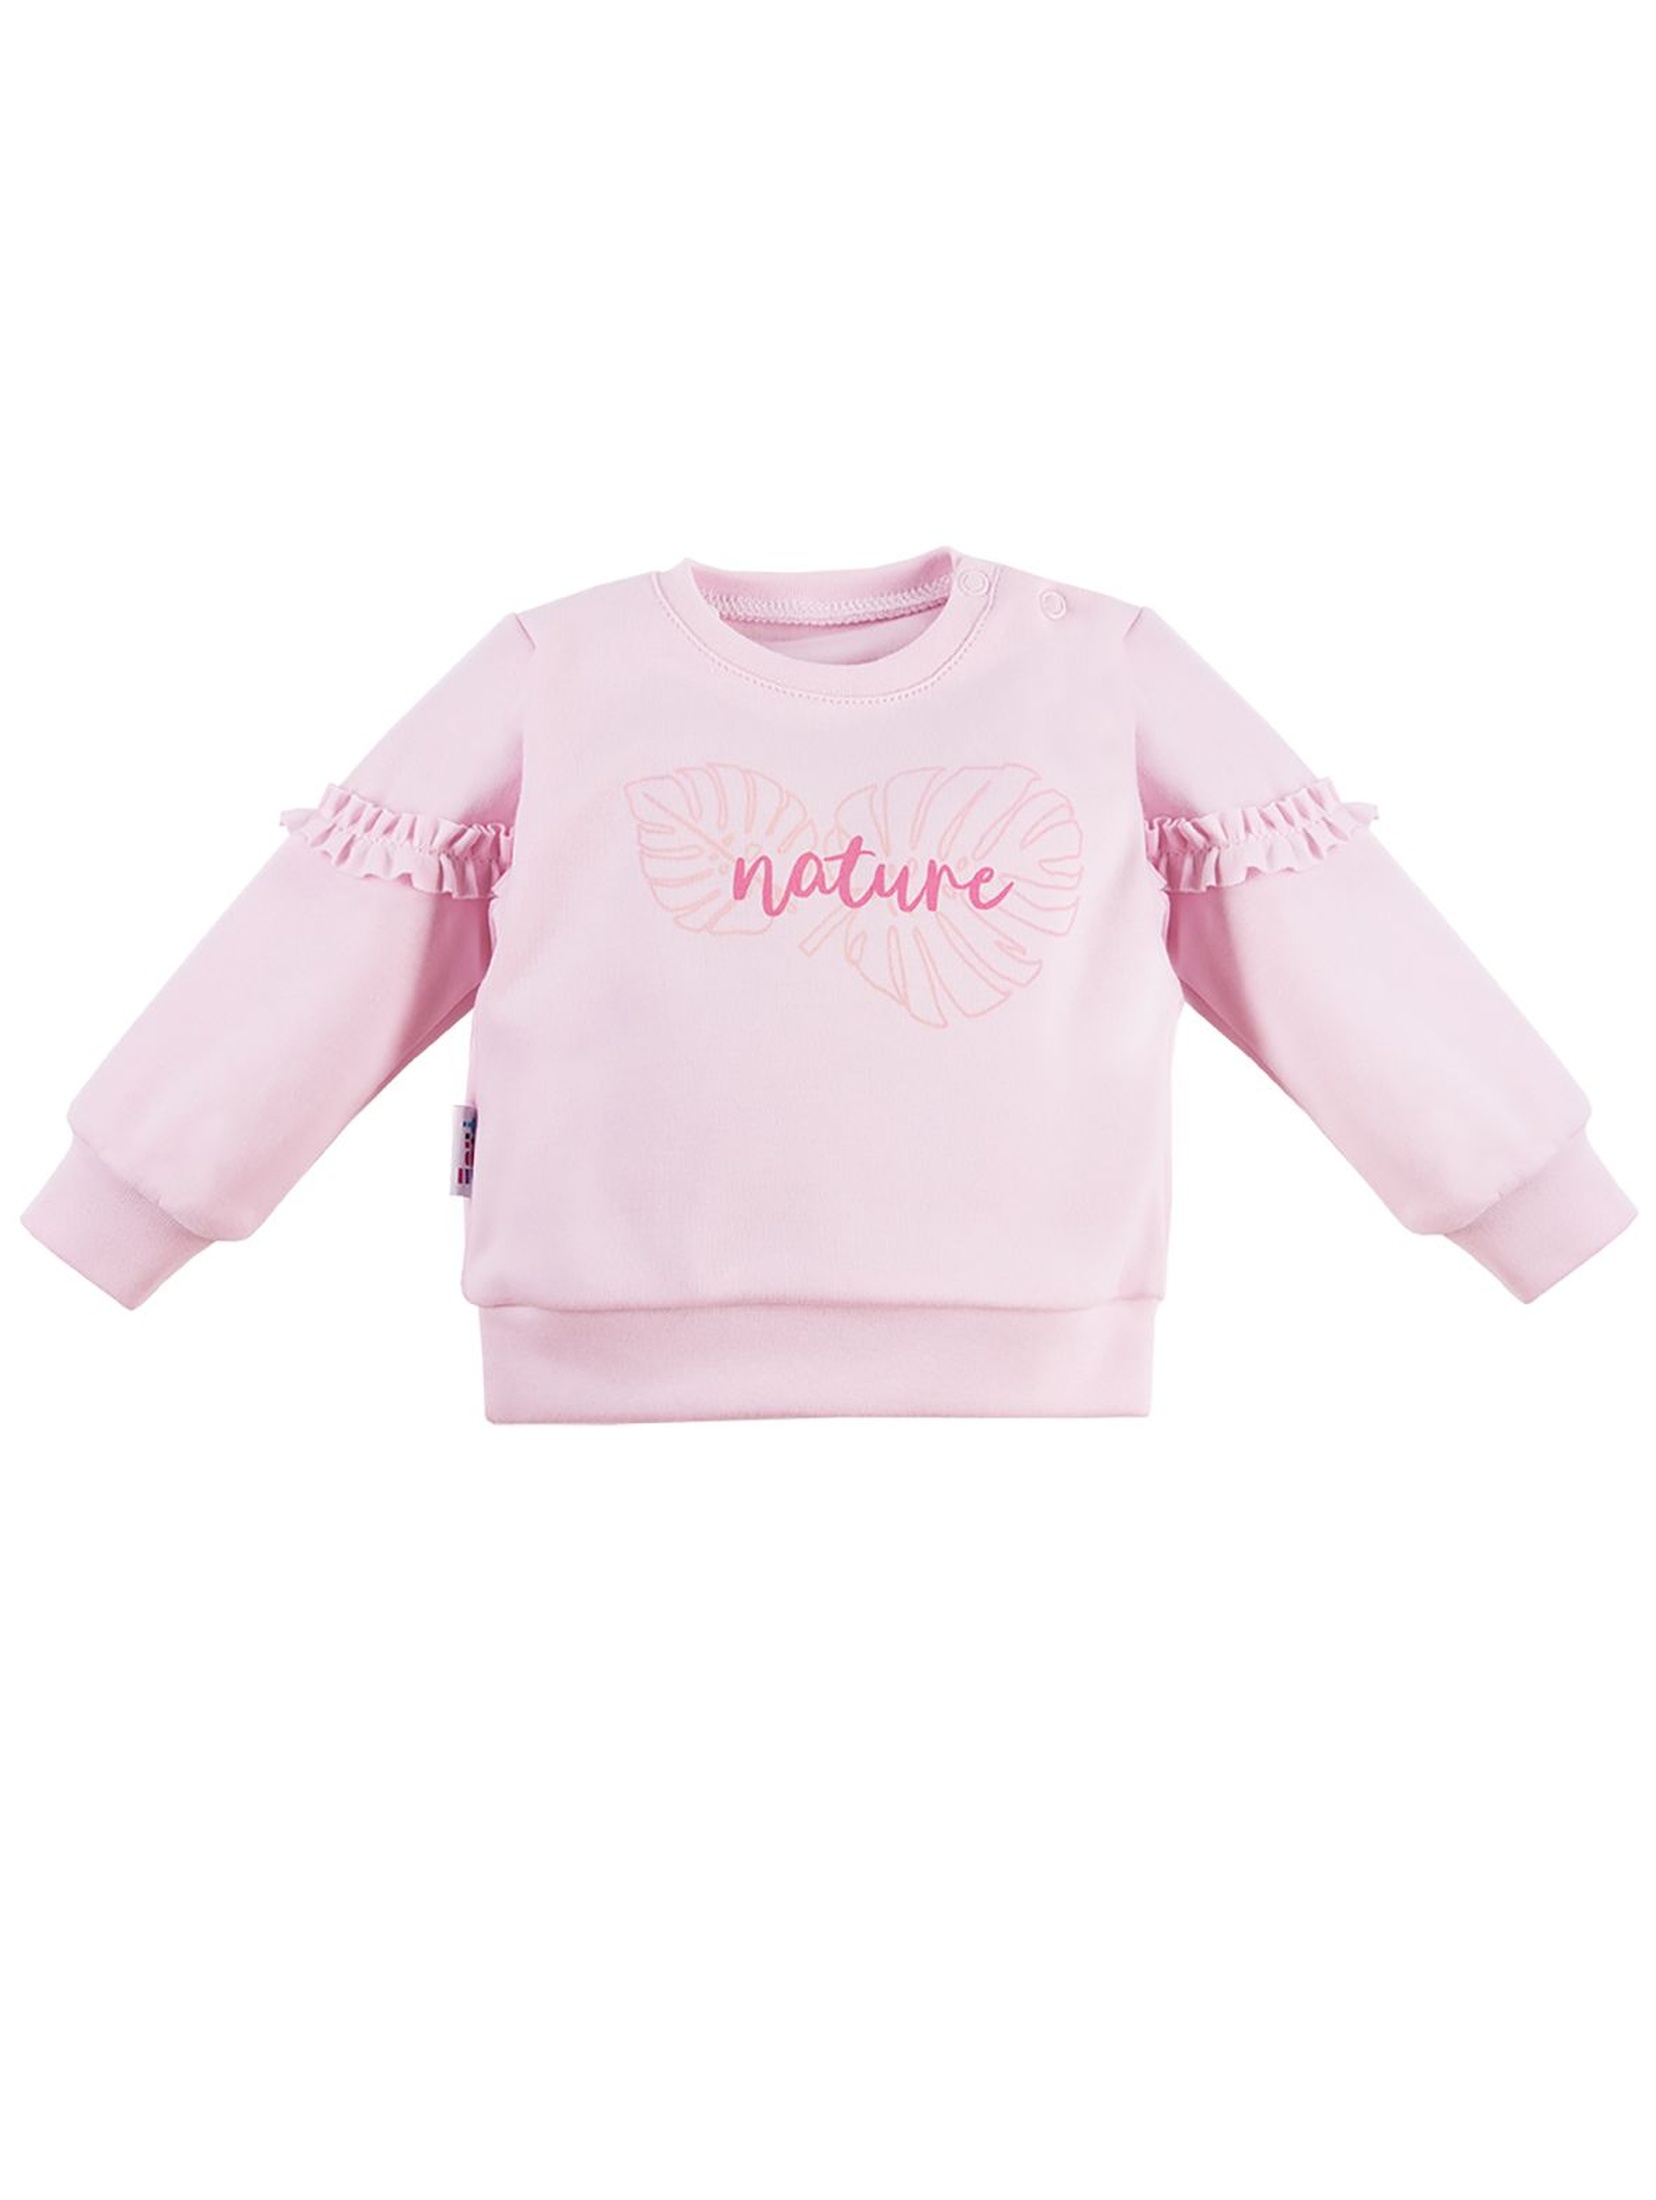 Bluza dziewczęca NATURE różowa